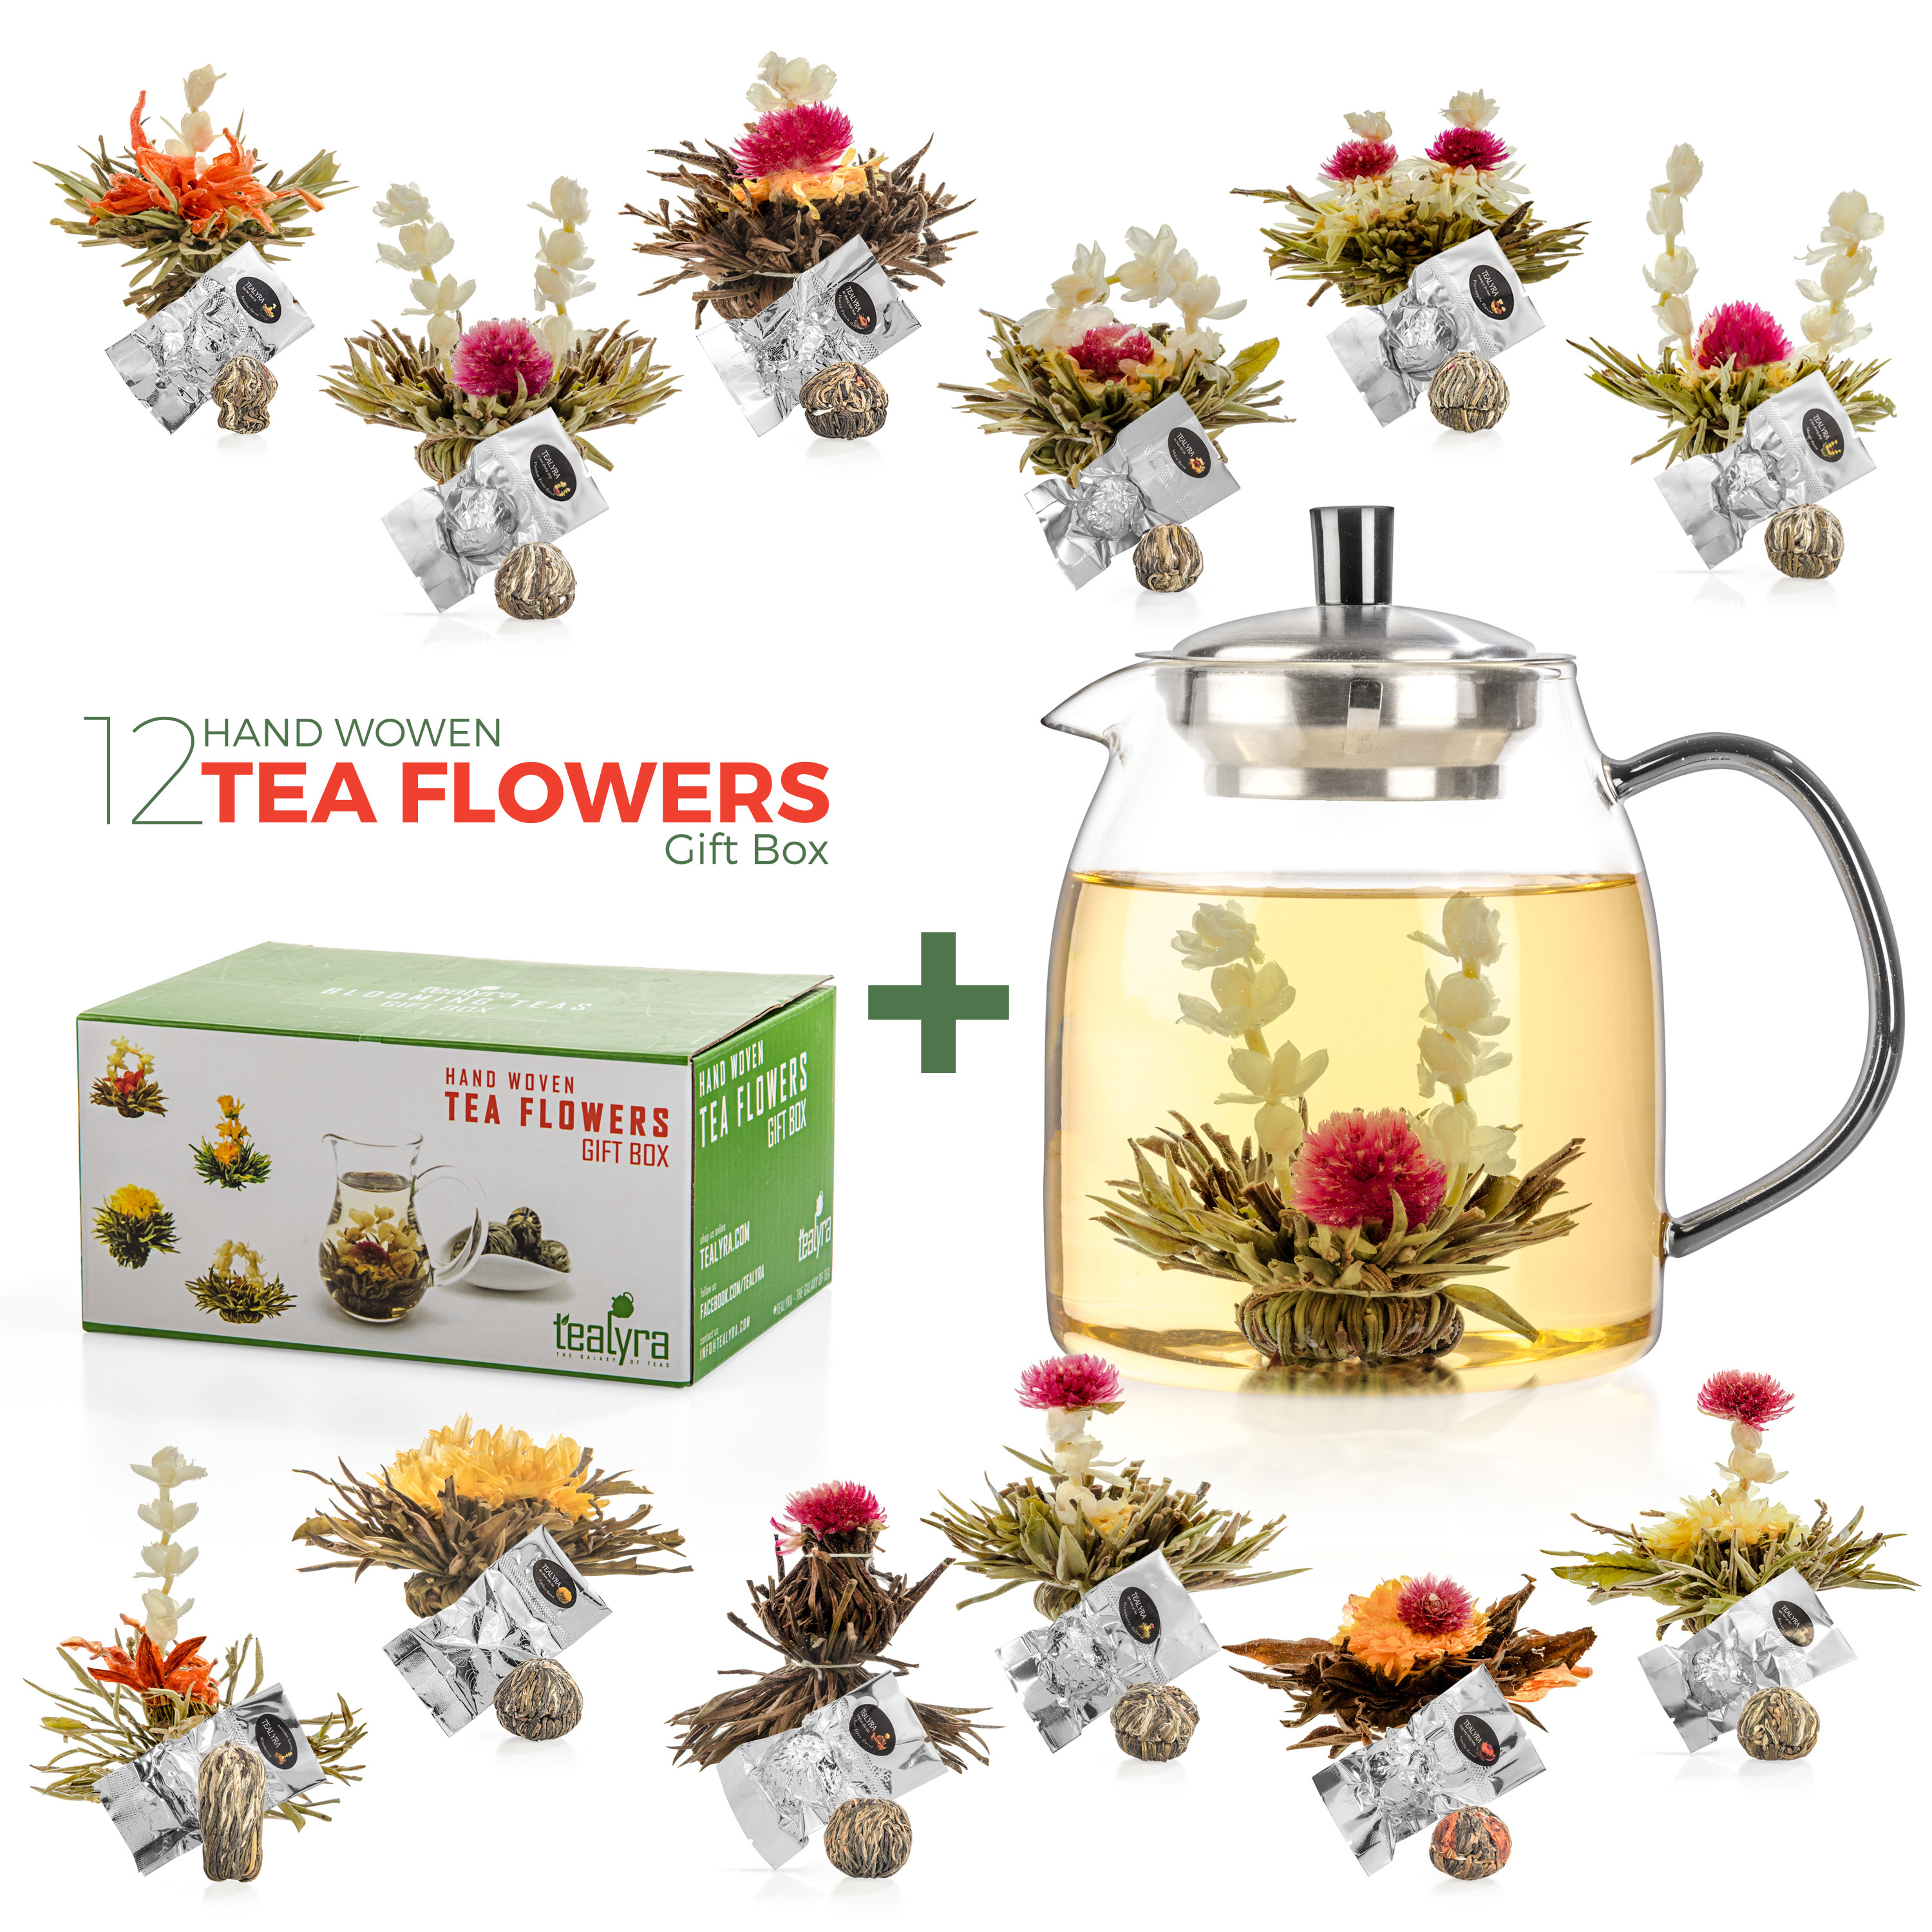 Blooming Tea Set